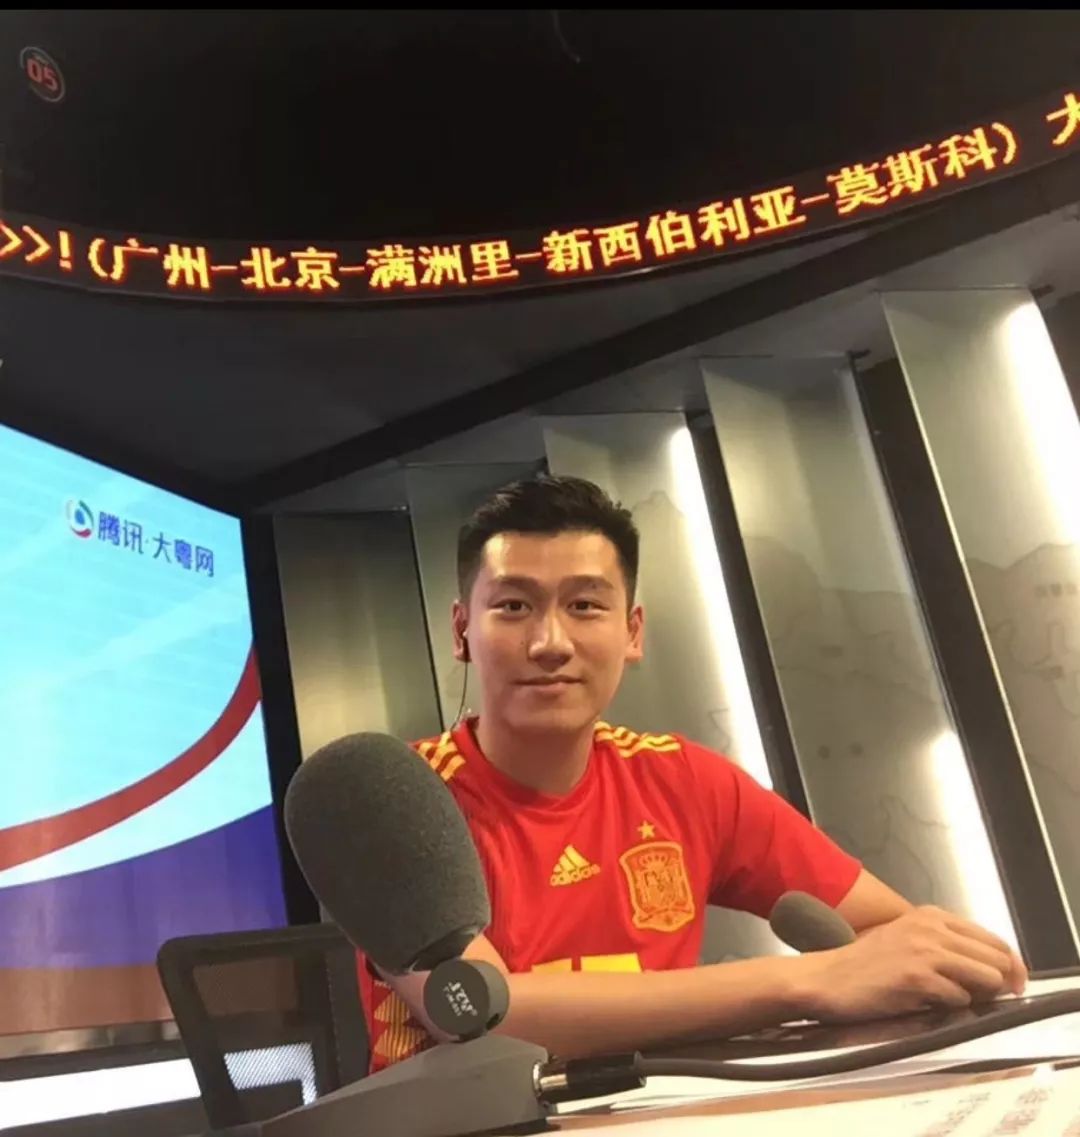 大咖王泰兴广东电视台节目主持人在体育解说届与北方名嘴宋世雄并称为